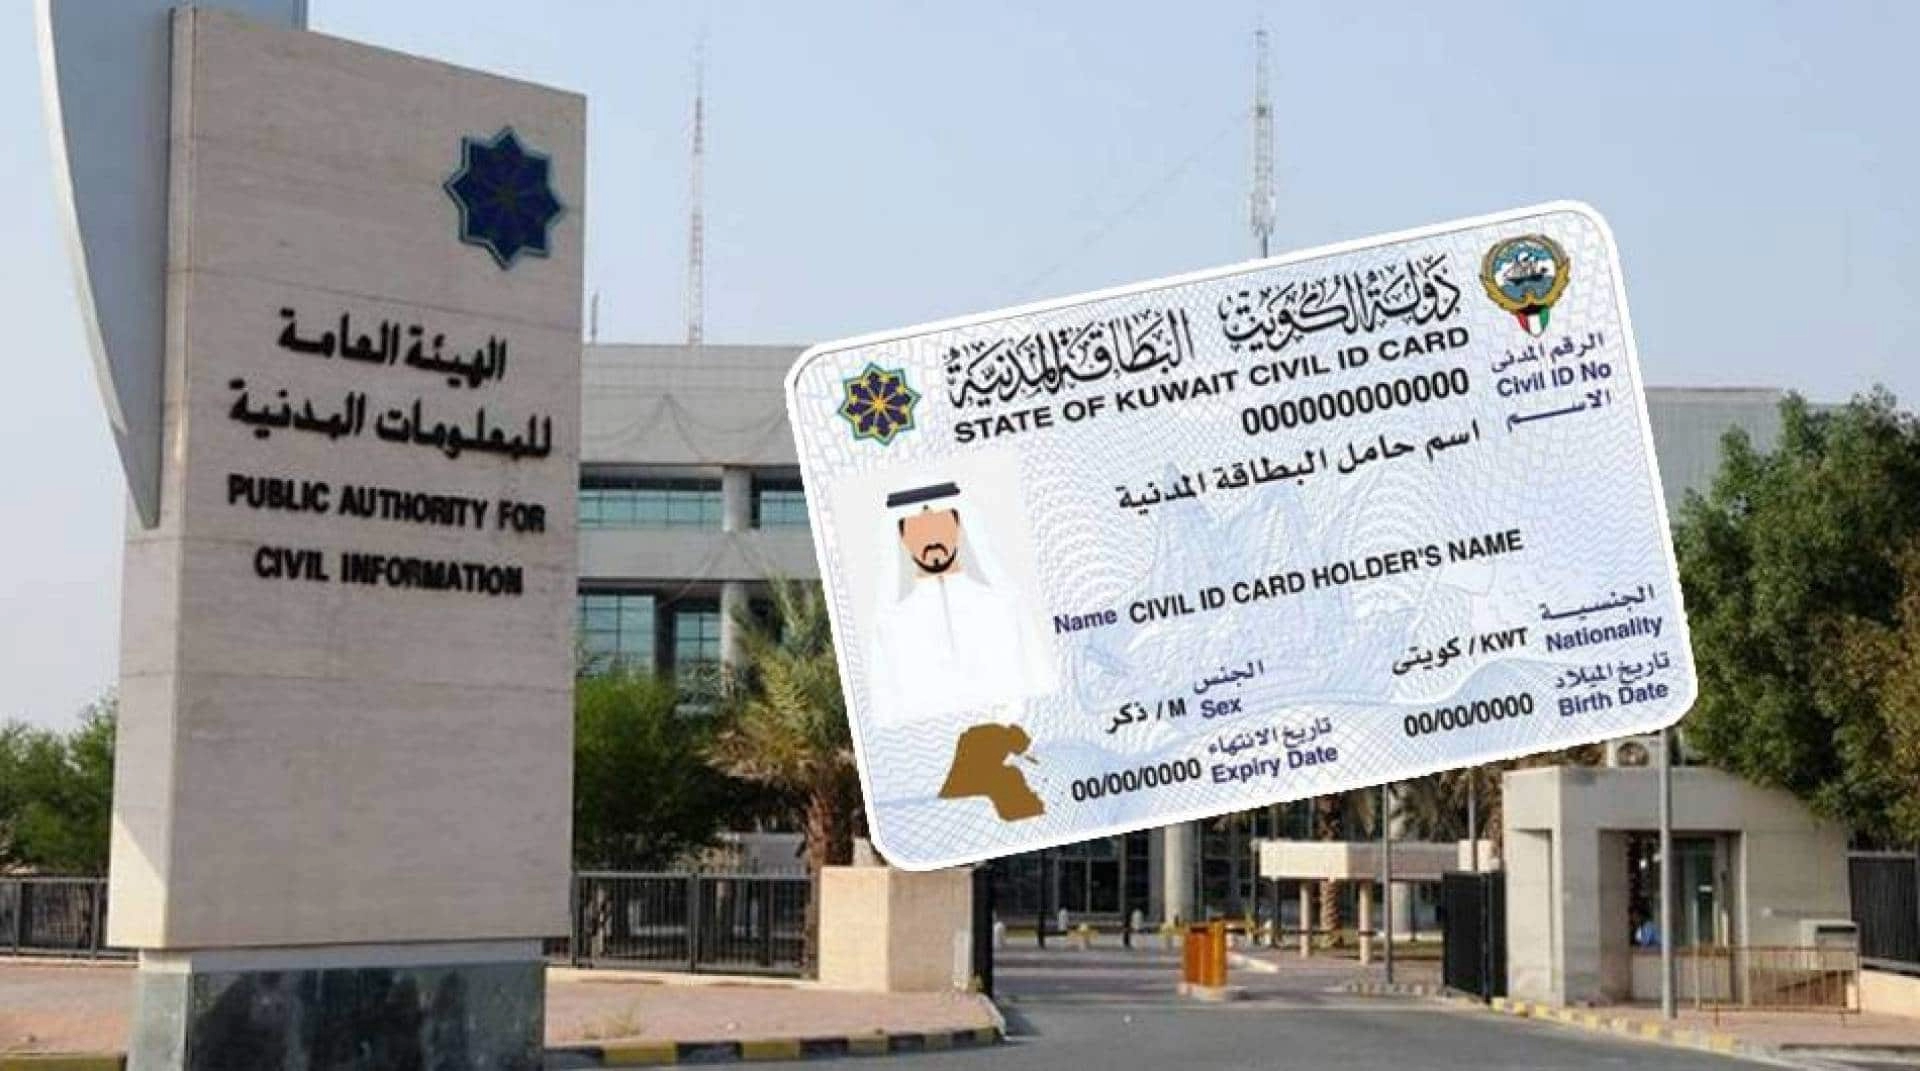 هيئة المعلومات المدنية تعلن طريقة تجديد البطاقة المدنية للمقيمين في الكويت